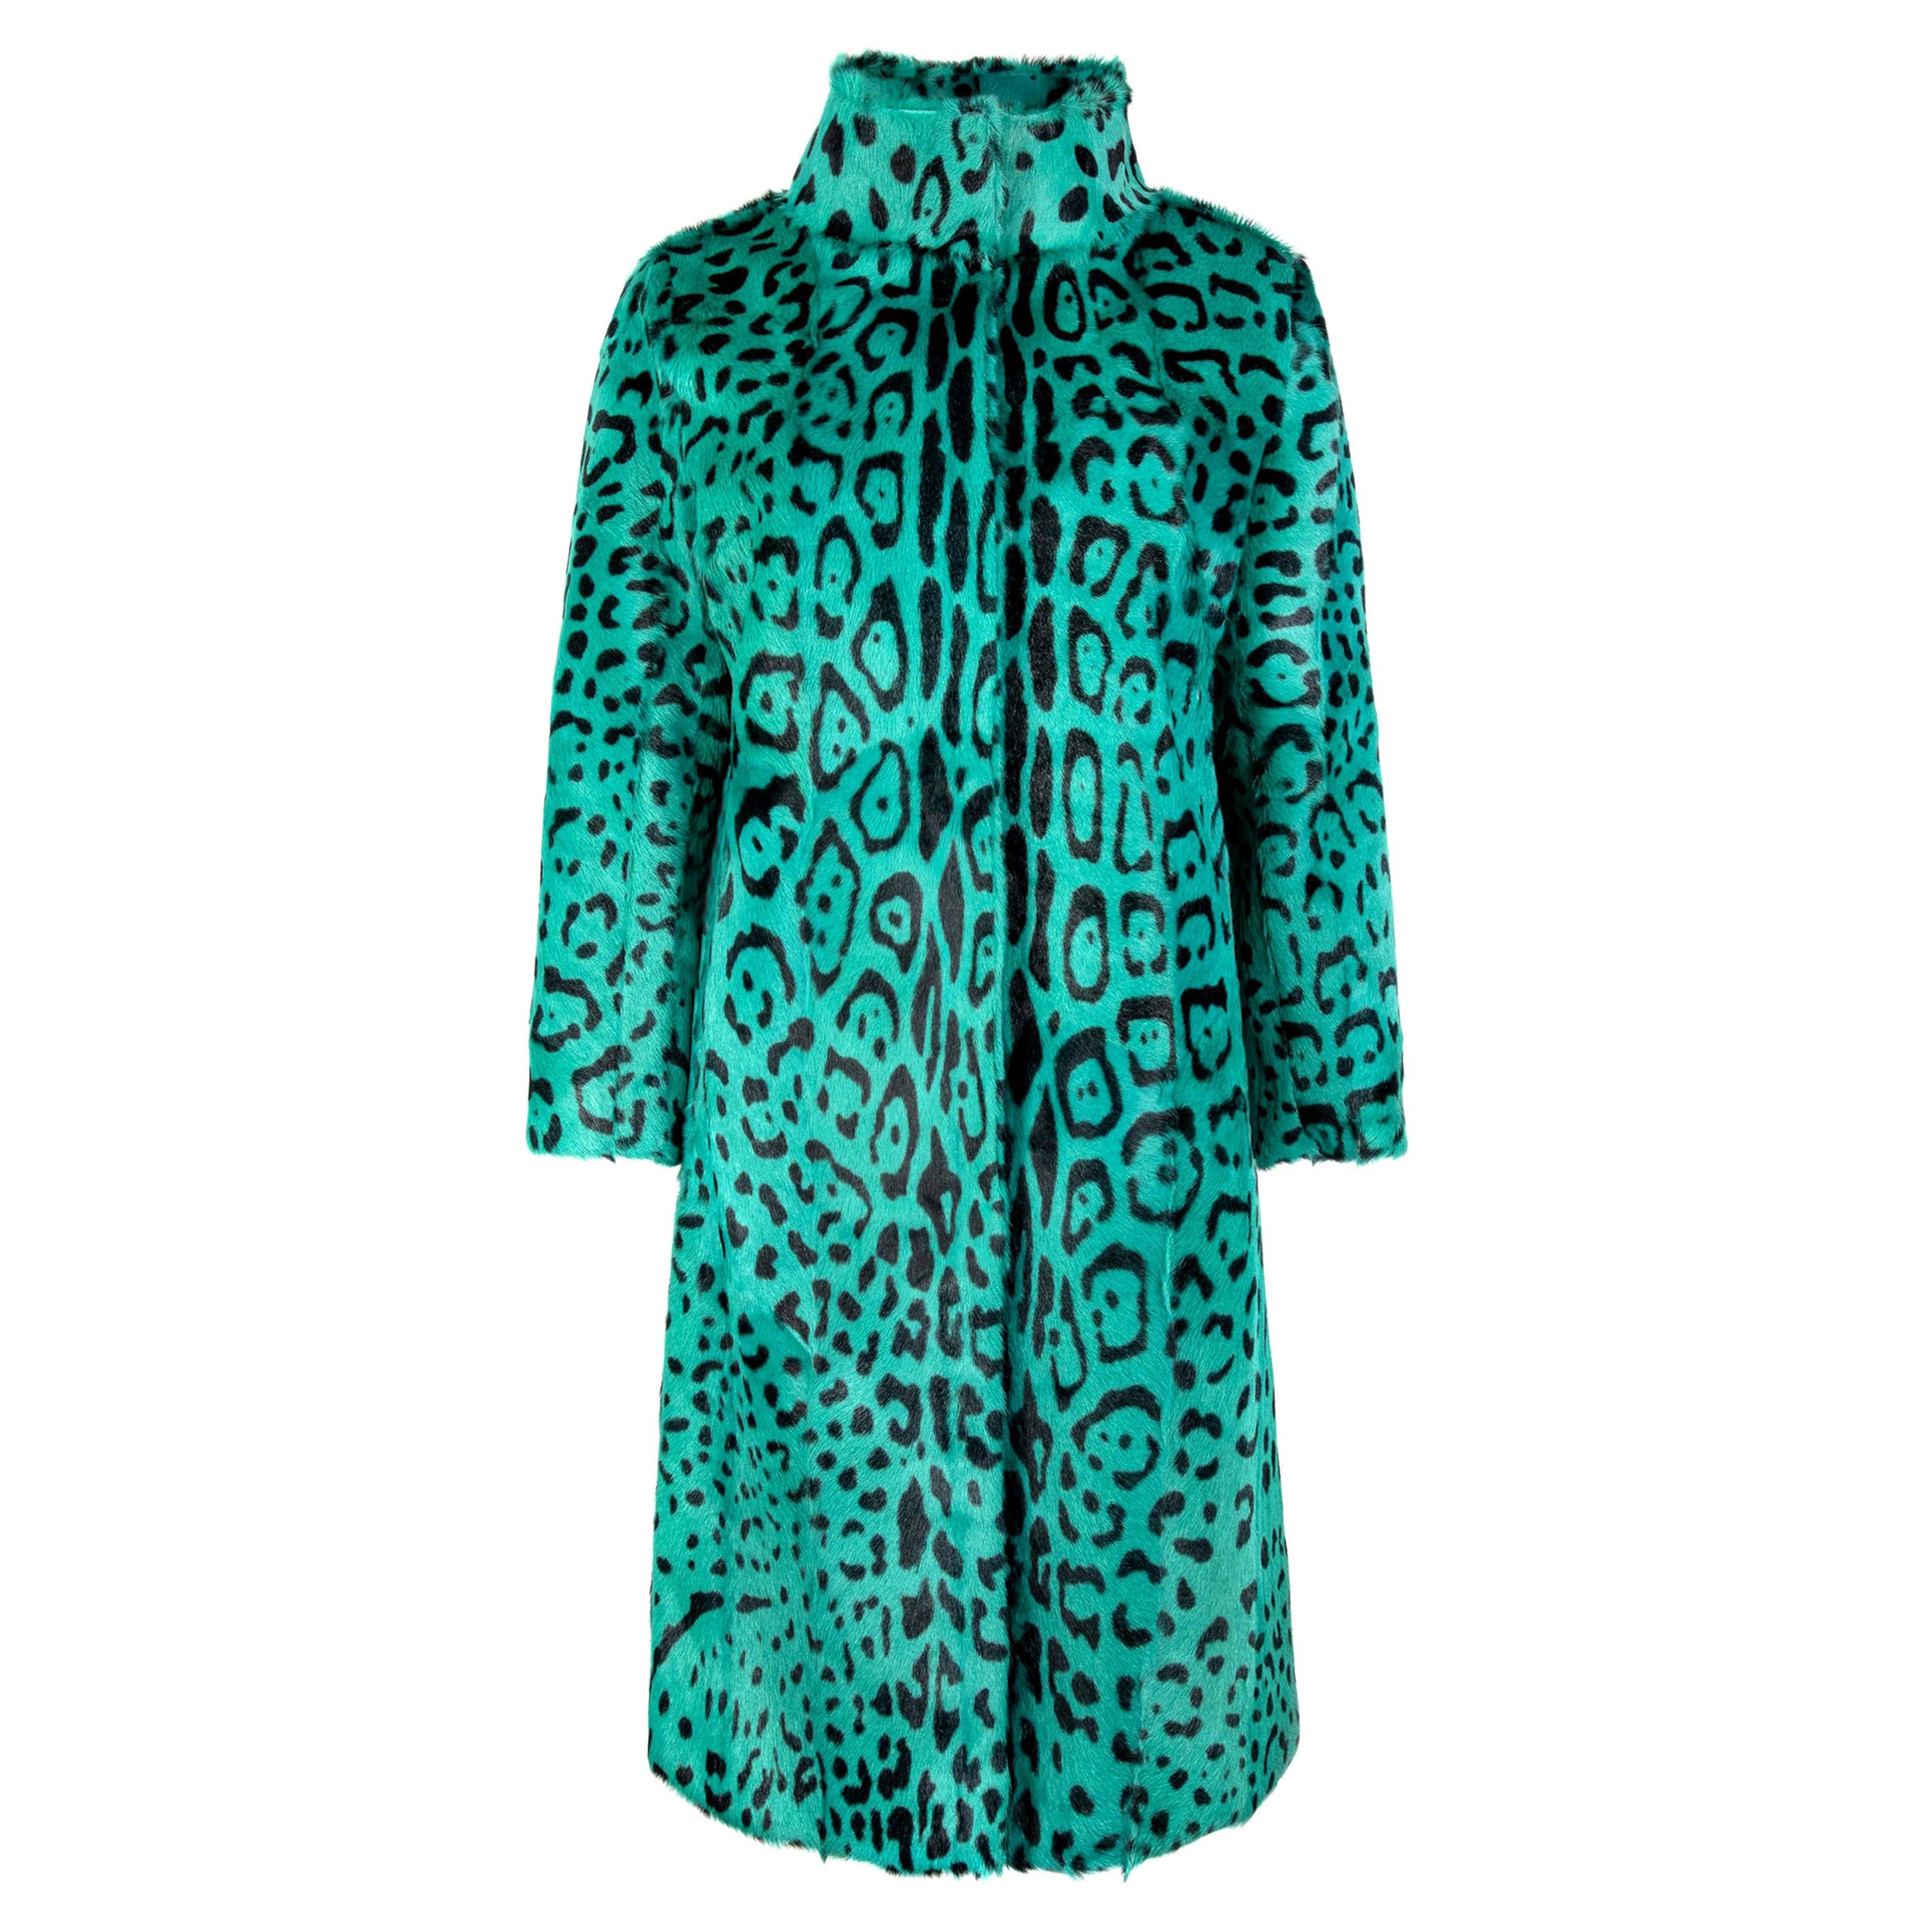 Verheyen London Manteau vert imprimé léopard à col haut et fourrure de chèvre, taille UK 12